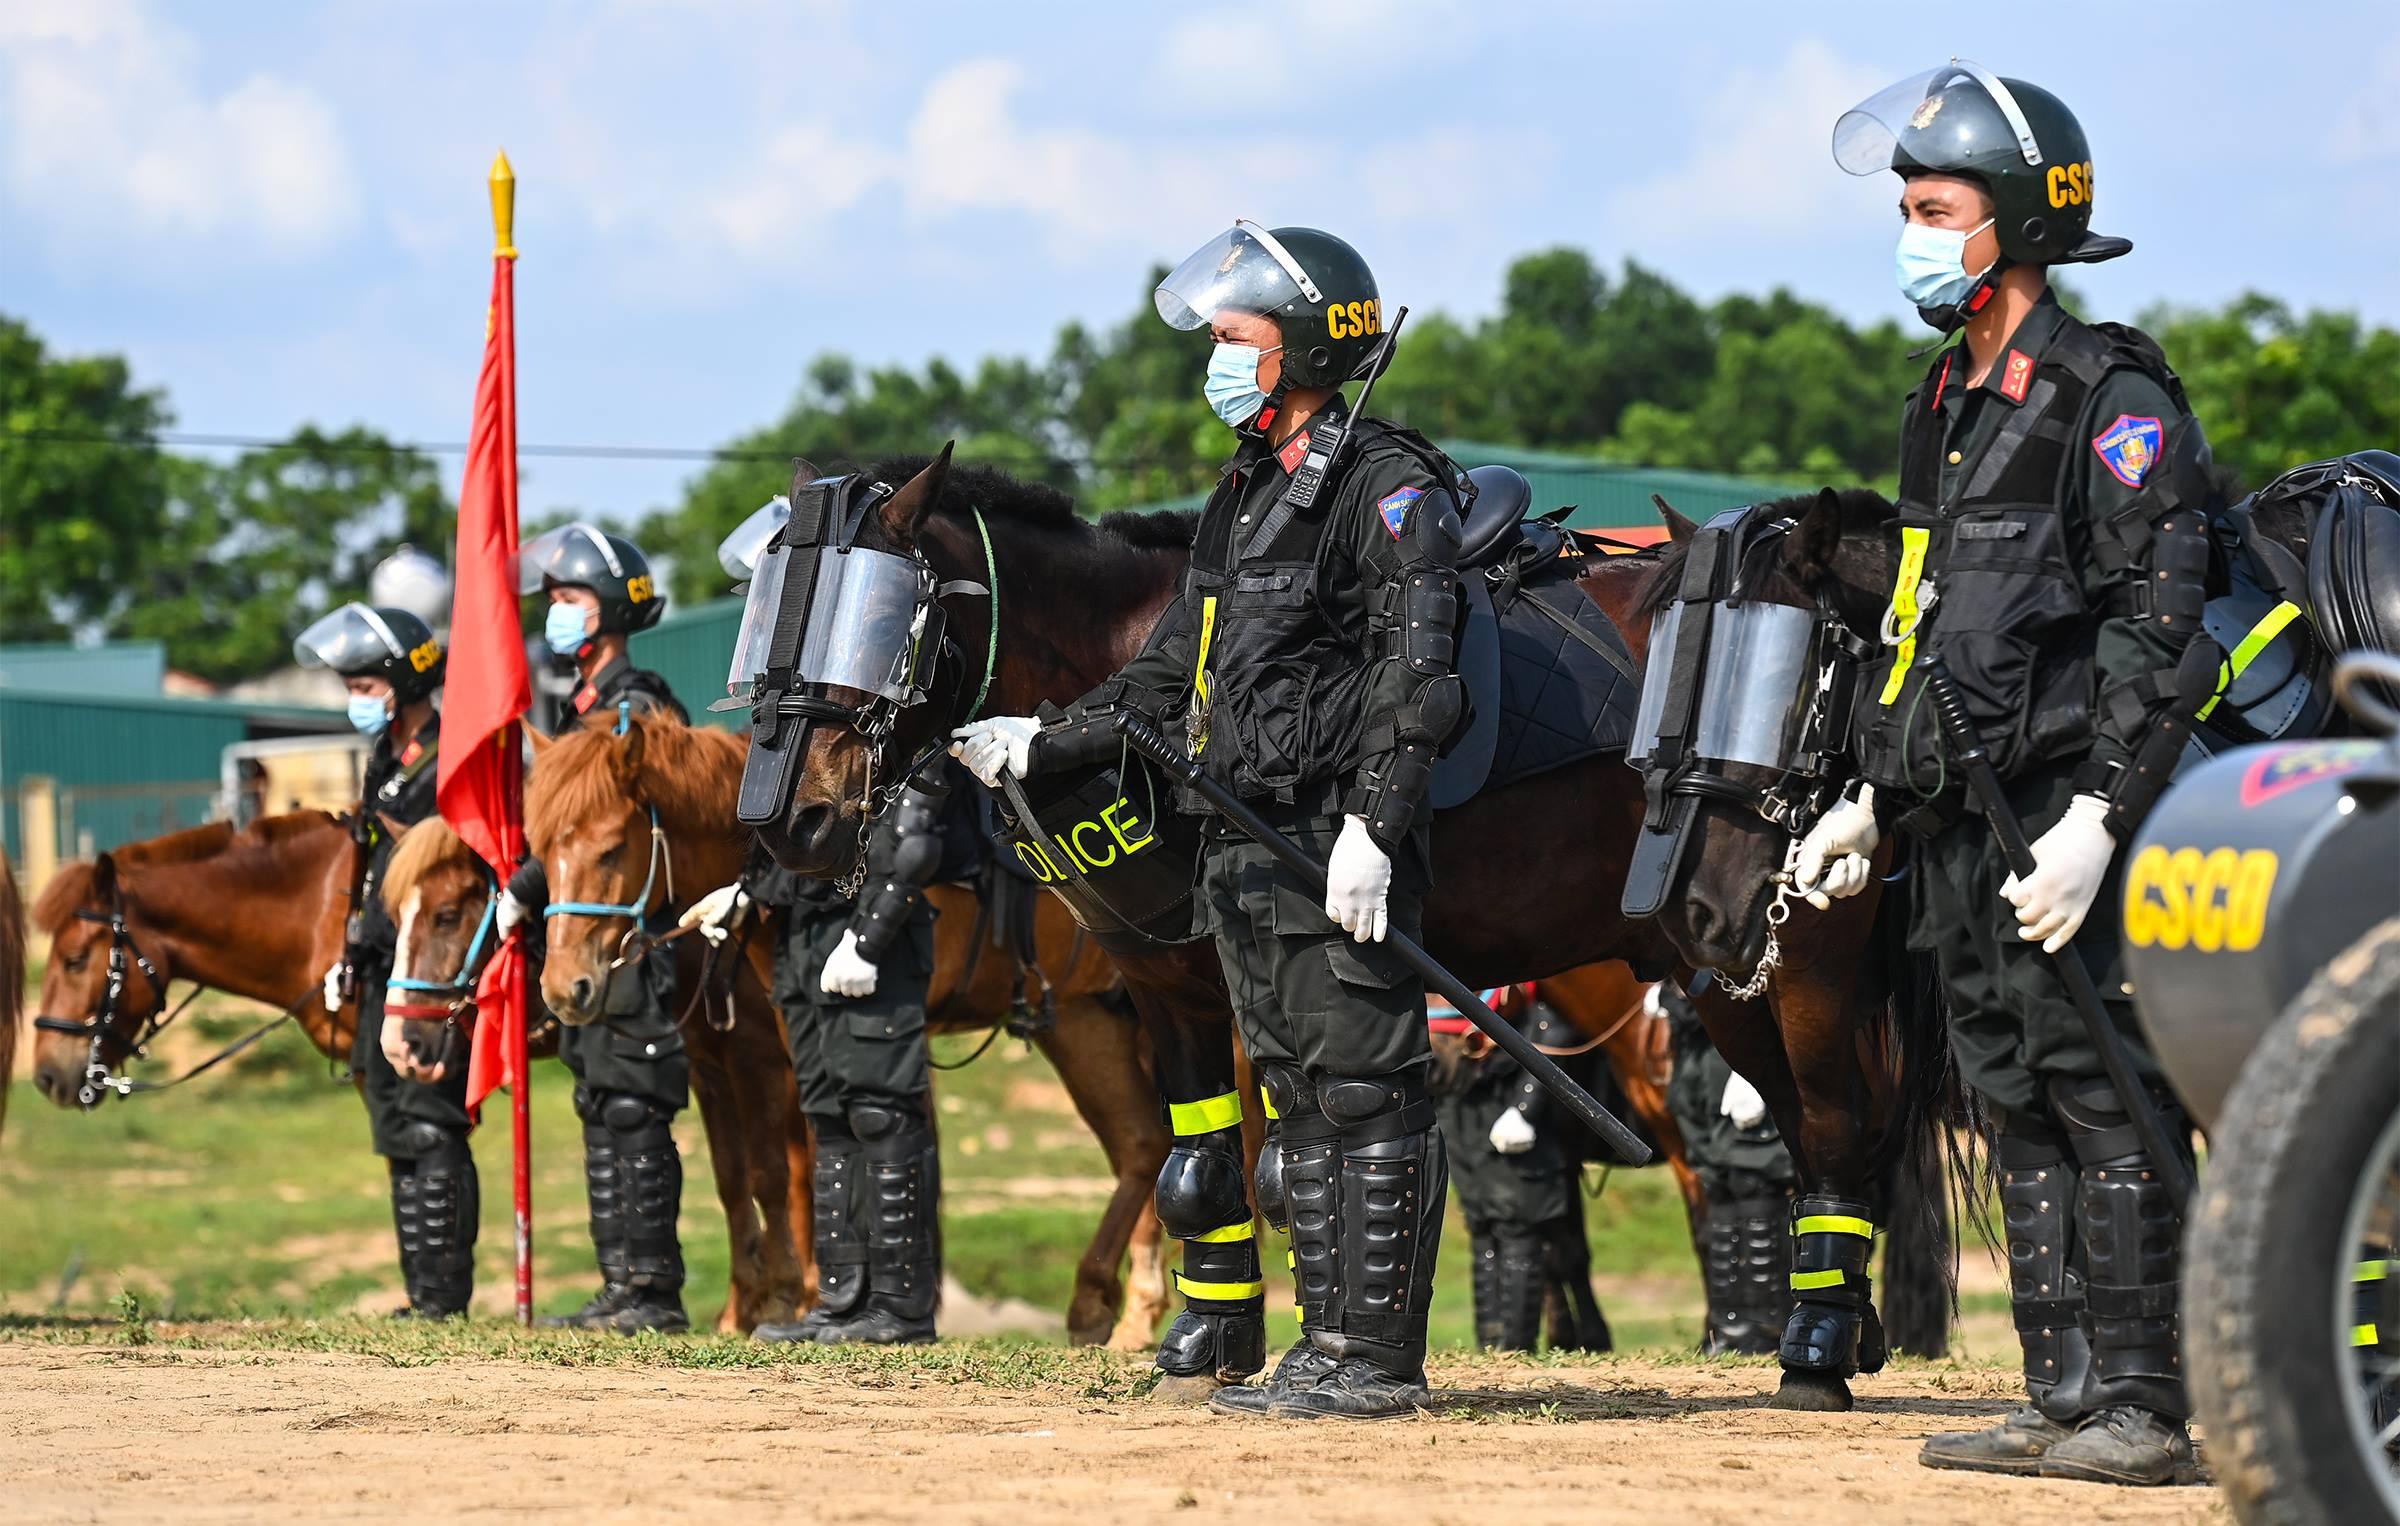 Cảnh sát Cơ động kỵ binh ngày một thuần thục kỹ năng nghiệp vụ - Ảnh 1.